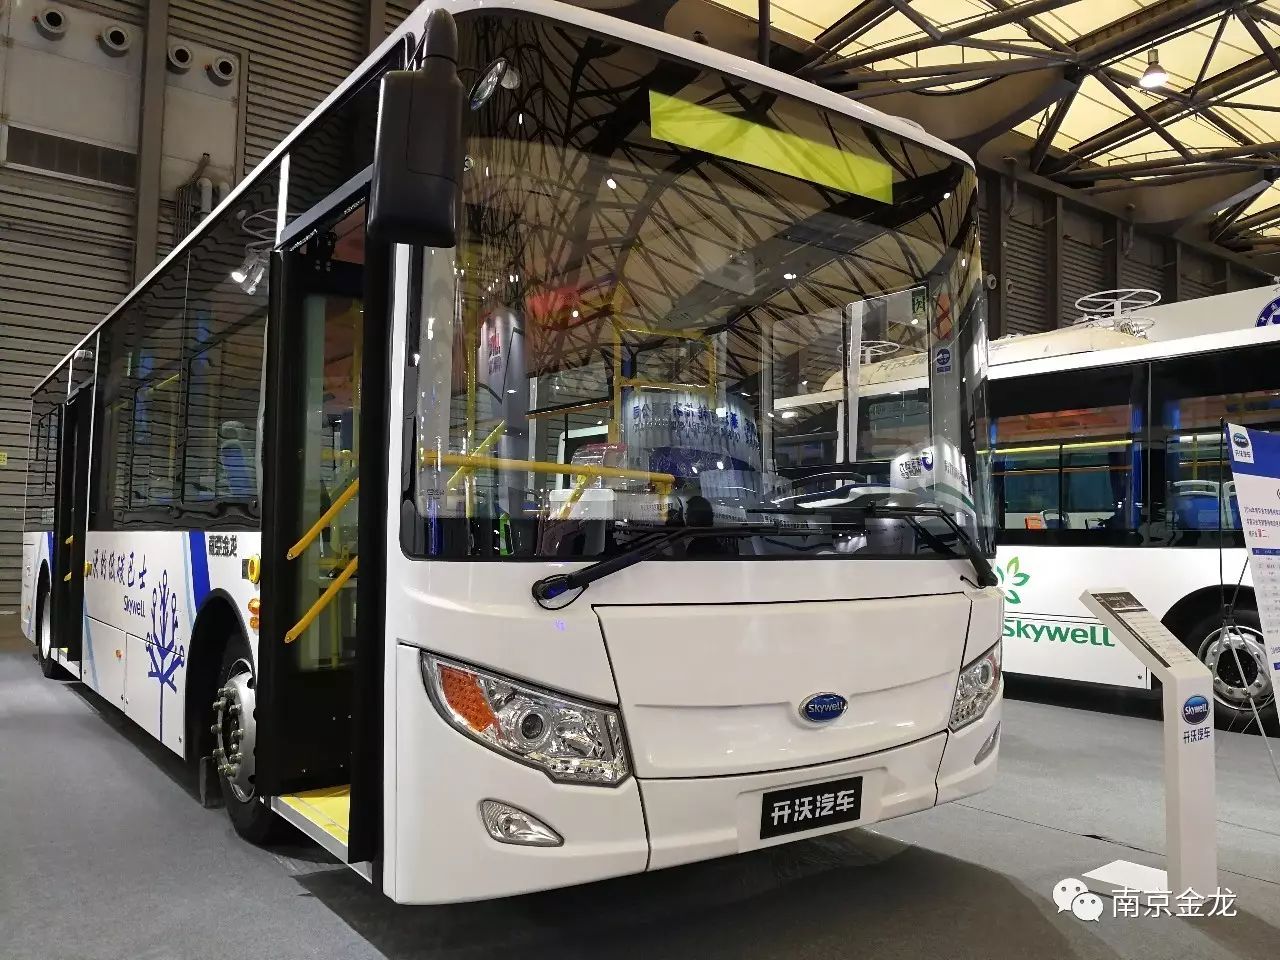 上海公交现役车型图集(截止2020年9月)—万象篇③ - 哔哩哔哩